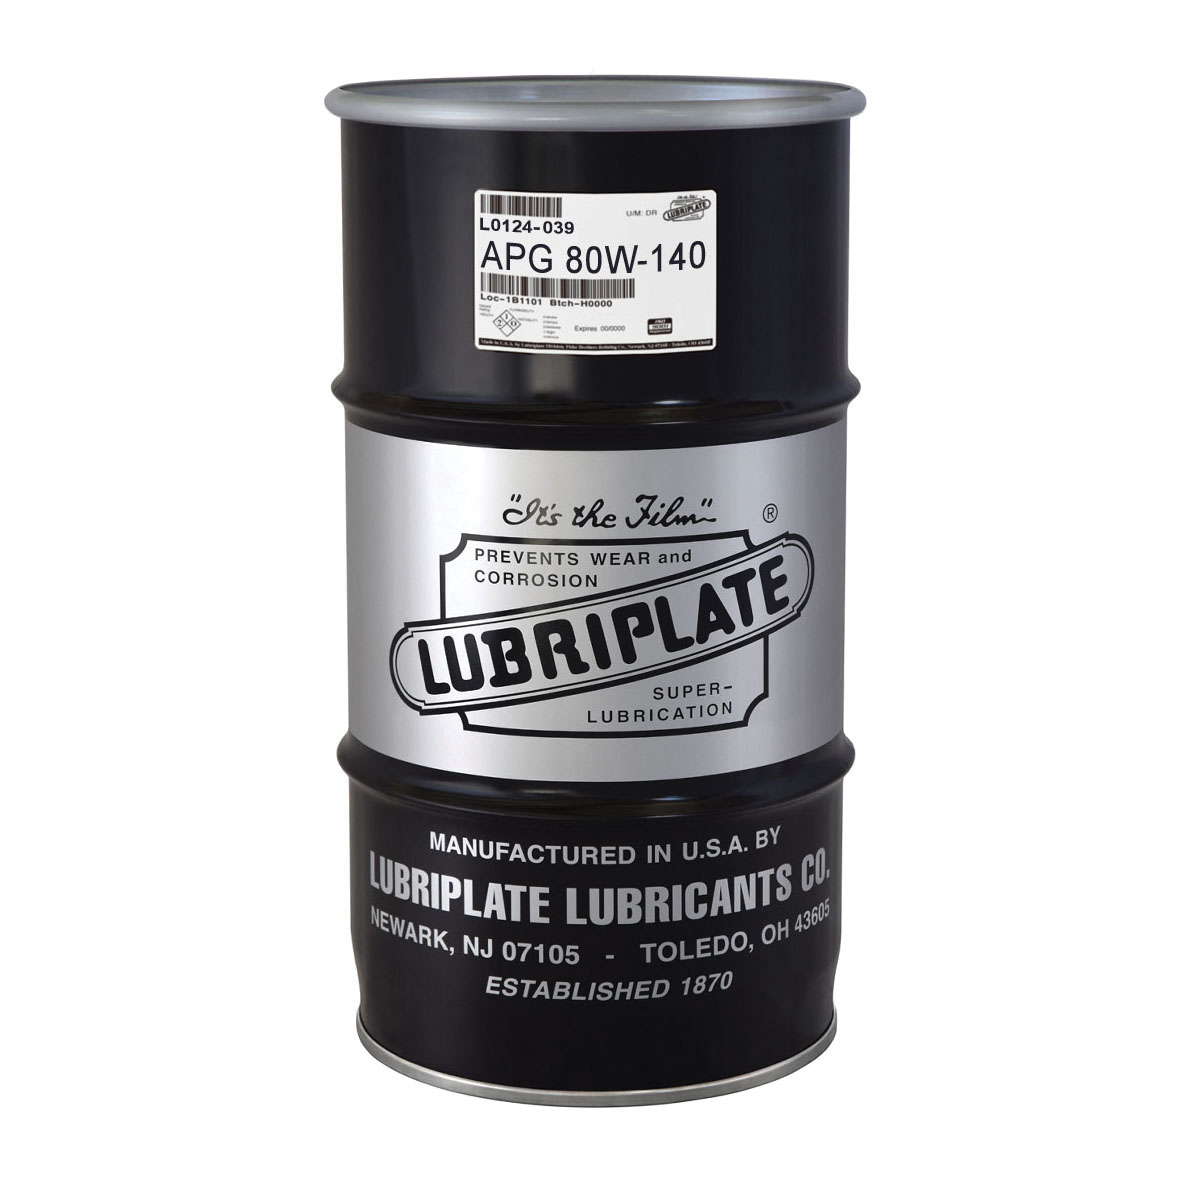 Lubriplate® L0124-039 APG-80W-140 Economic Multi-Grade Gear Oil, 120 lb Keg, Additive Odor/Scent, Liquid Form, ISO 320 Grade, Amber